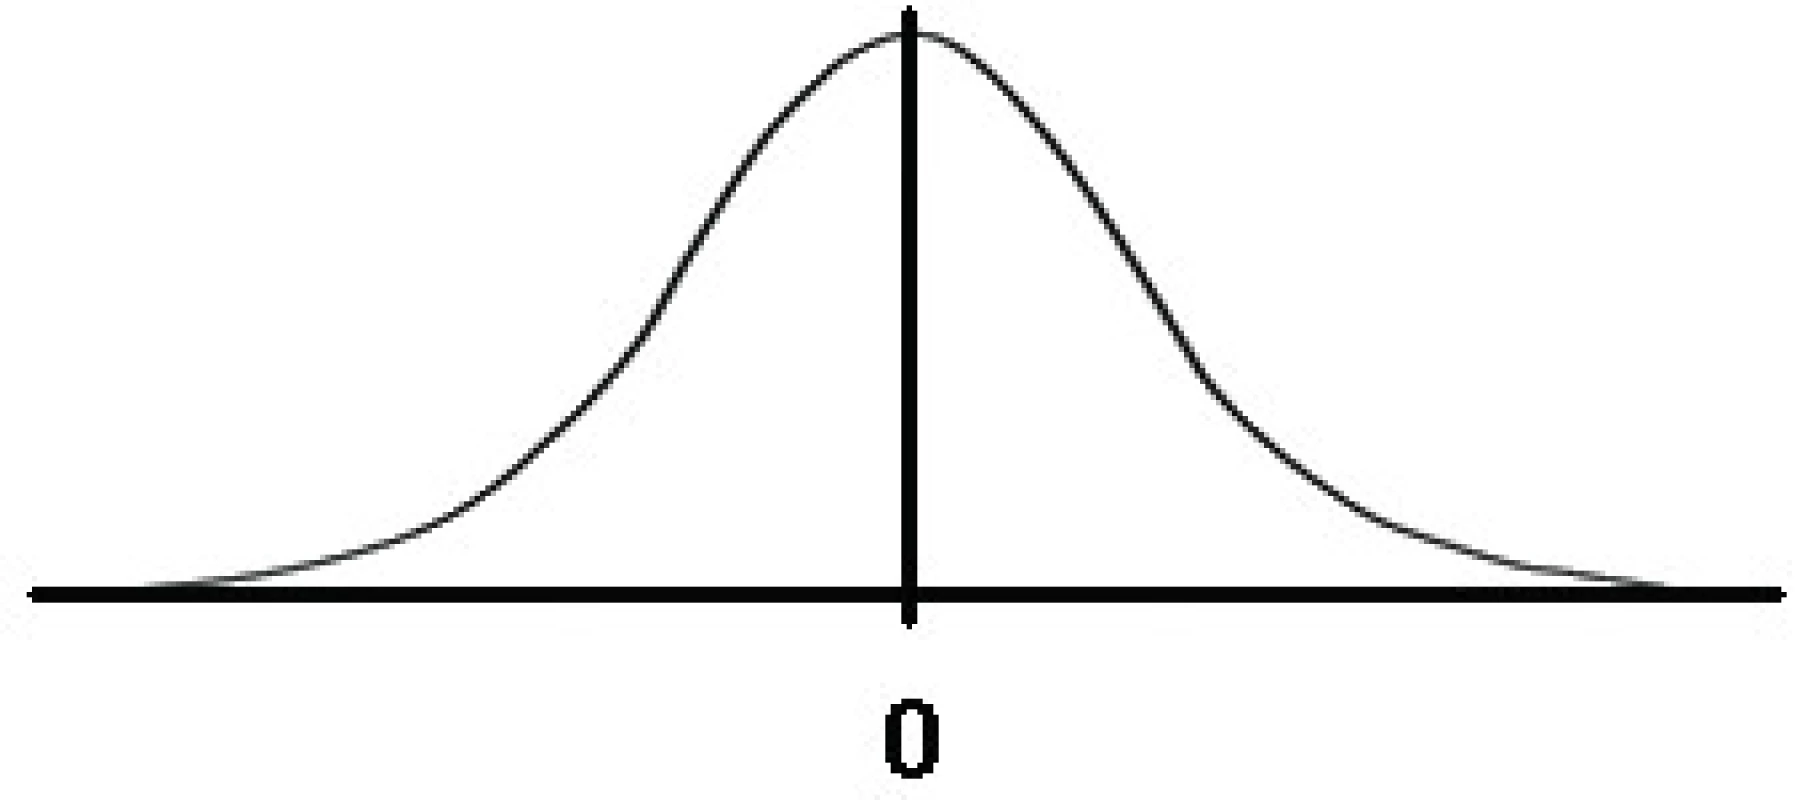 Gaussova křivka – hustota pravděpodobnosti náhodných chyb